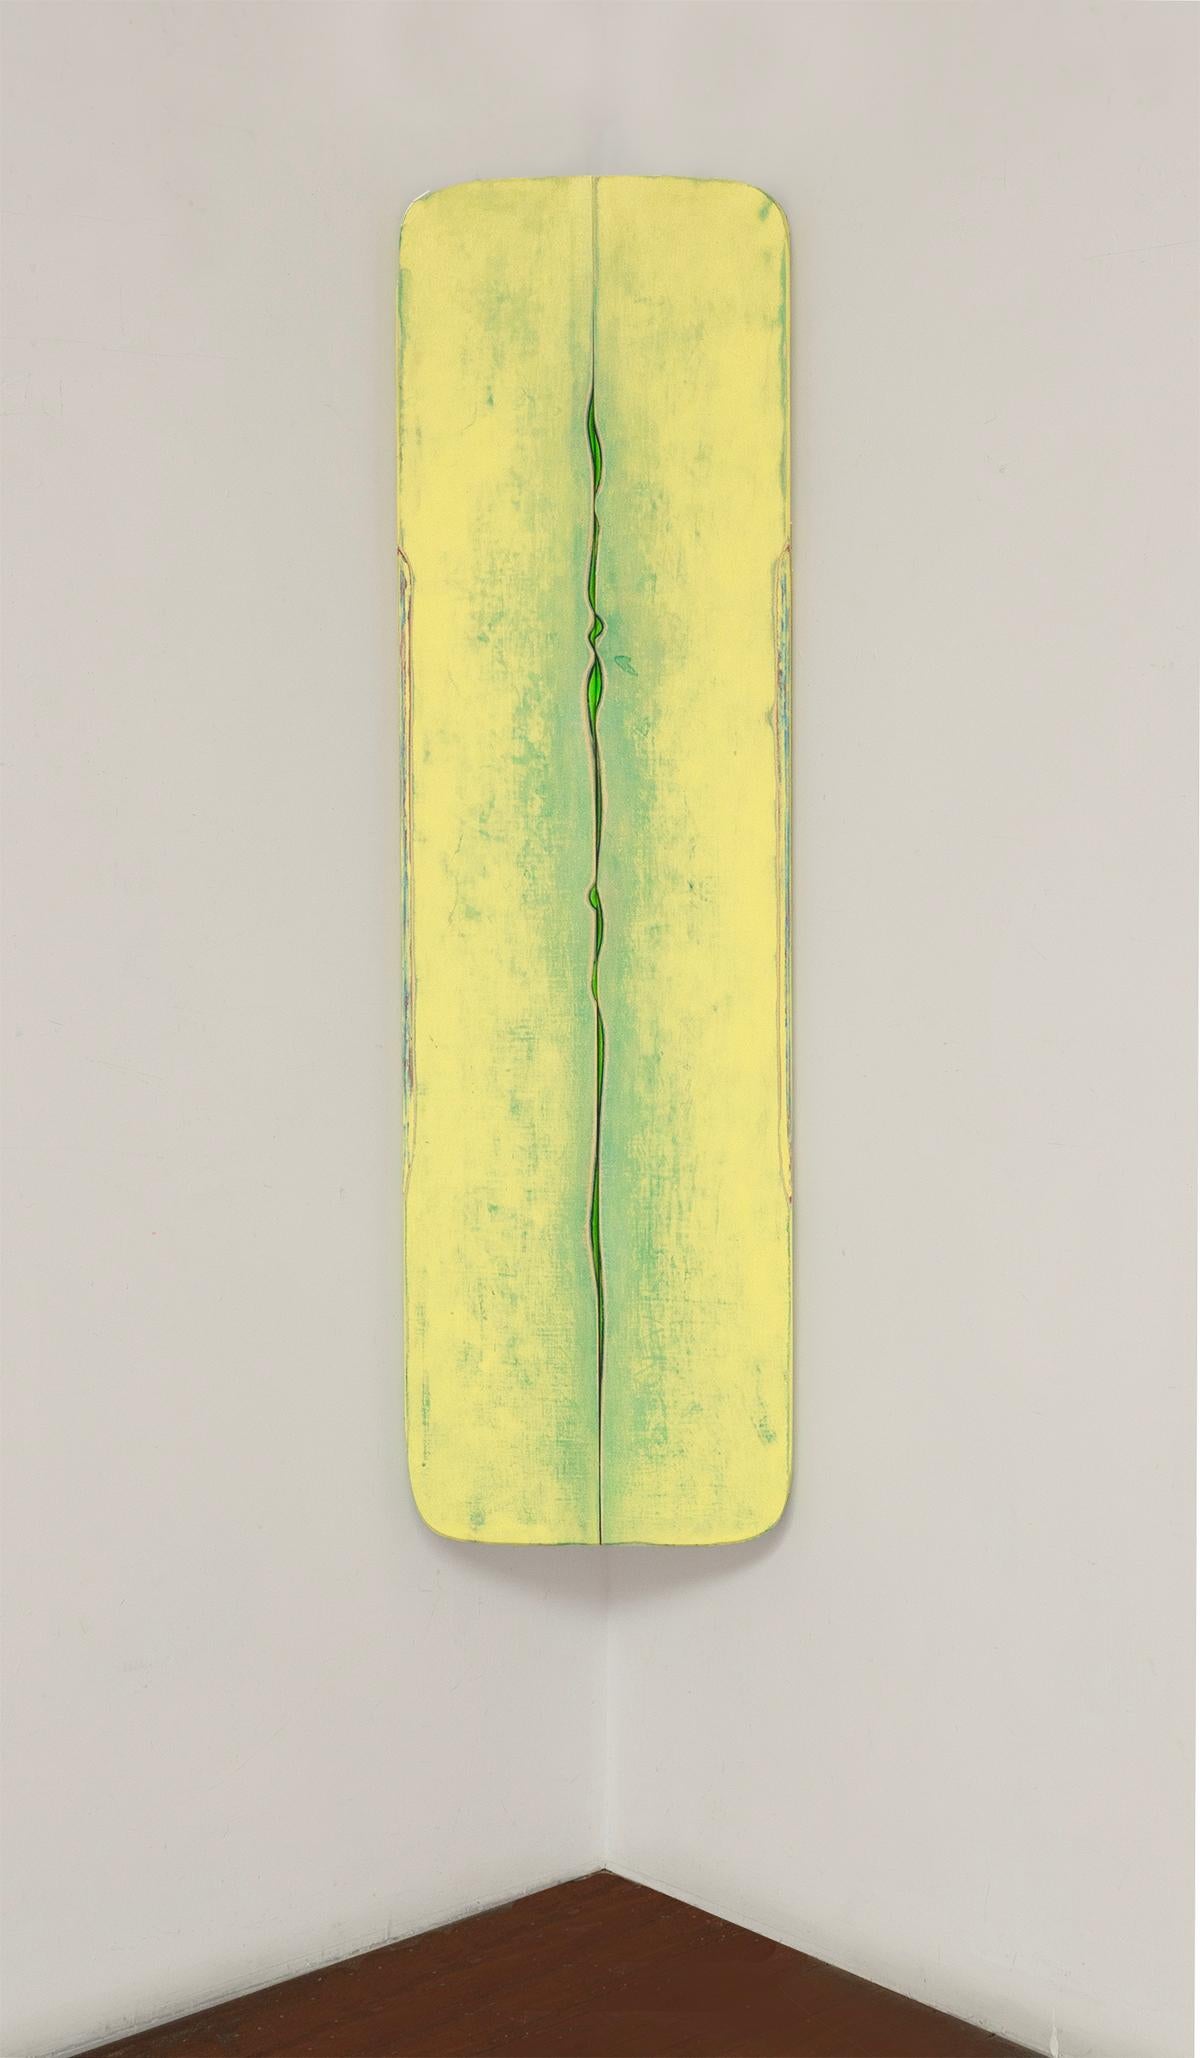 Schillerndes, blassgelbes, leuchtendes Grün, Eck-Skulpturgemälde auf Holz – Mixed Media Art von Robert Yasuda